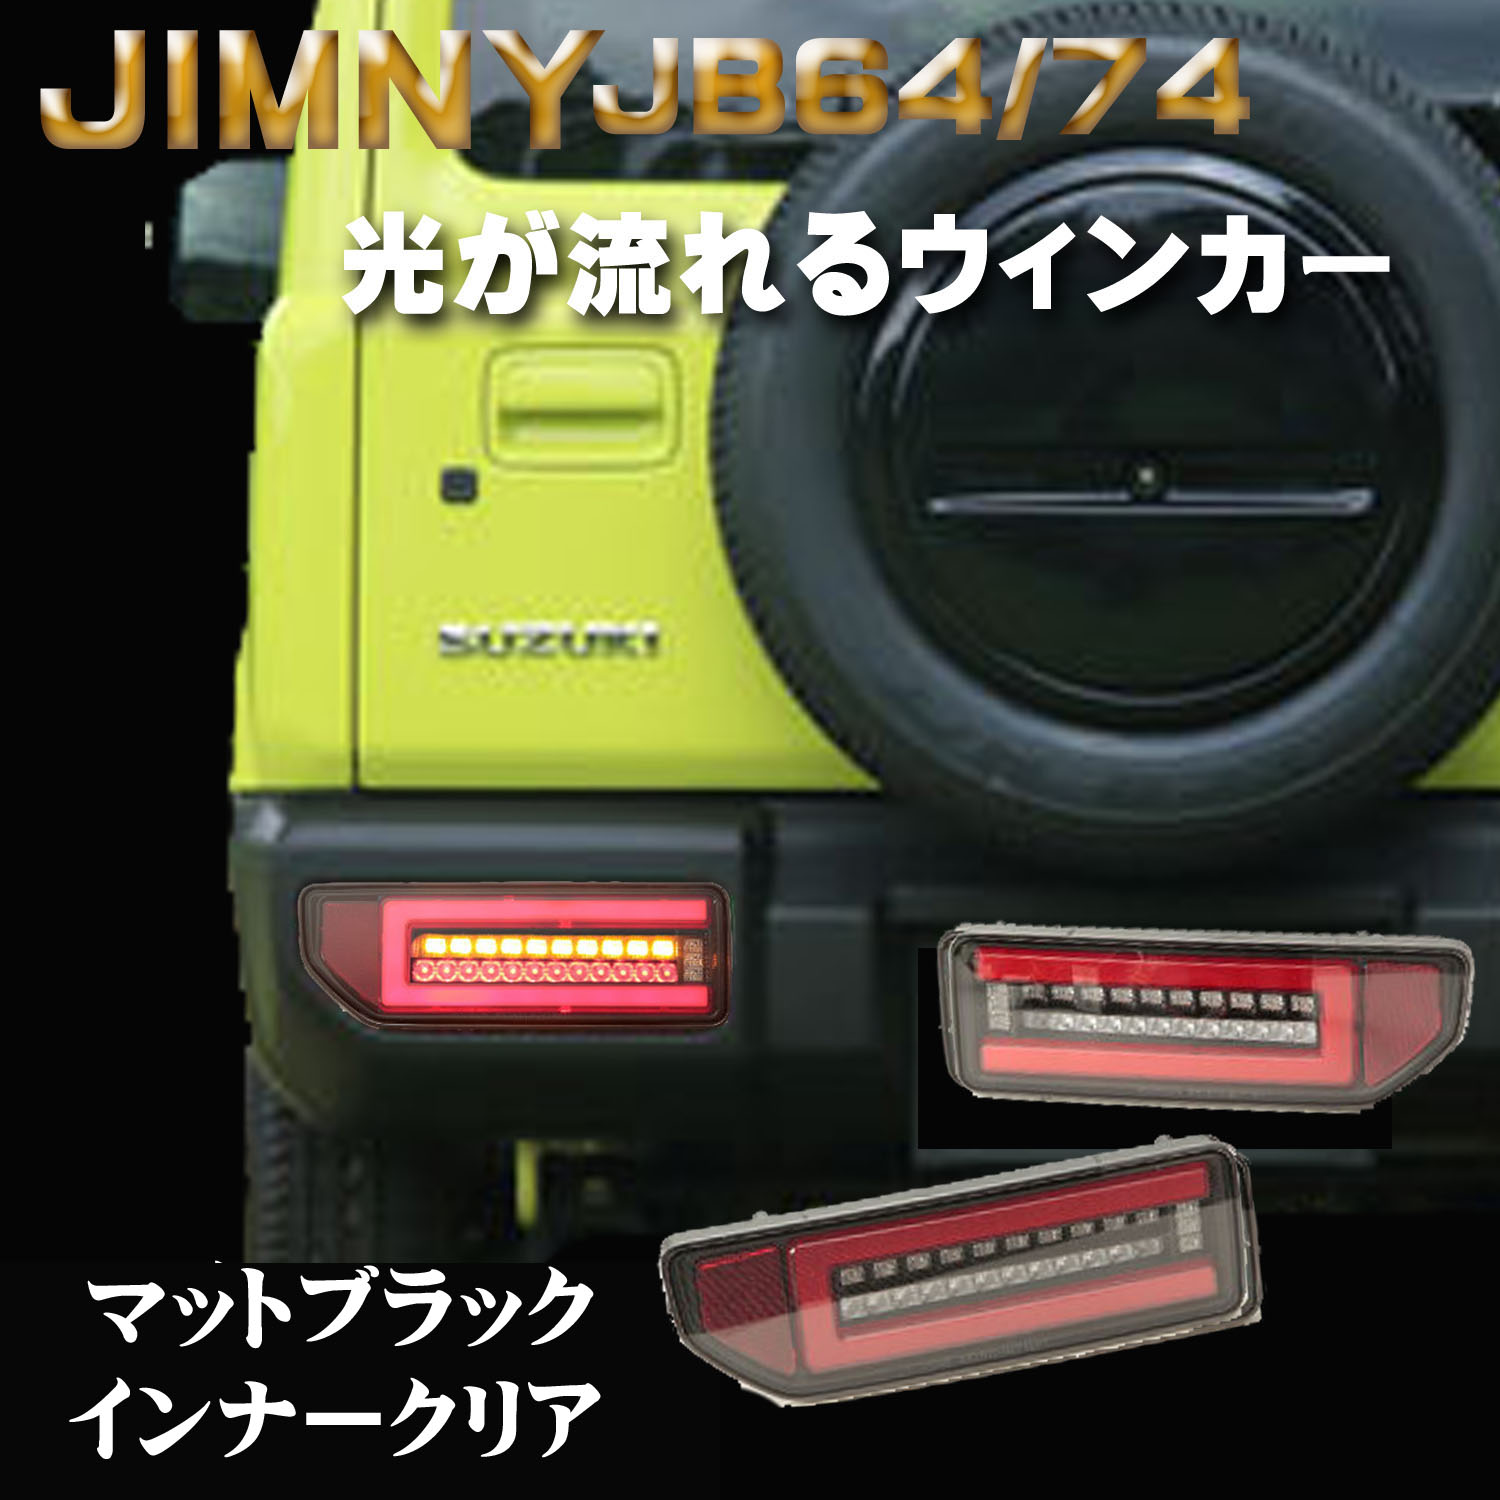 【楽天市場】SONAR(ソナー) テールランプ ジムニー JB64 